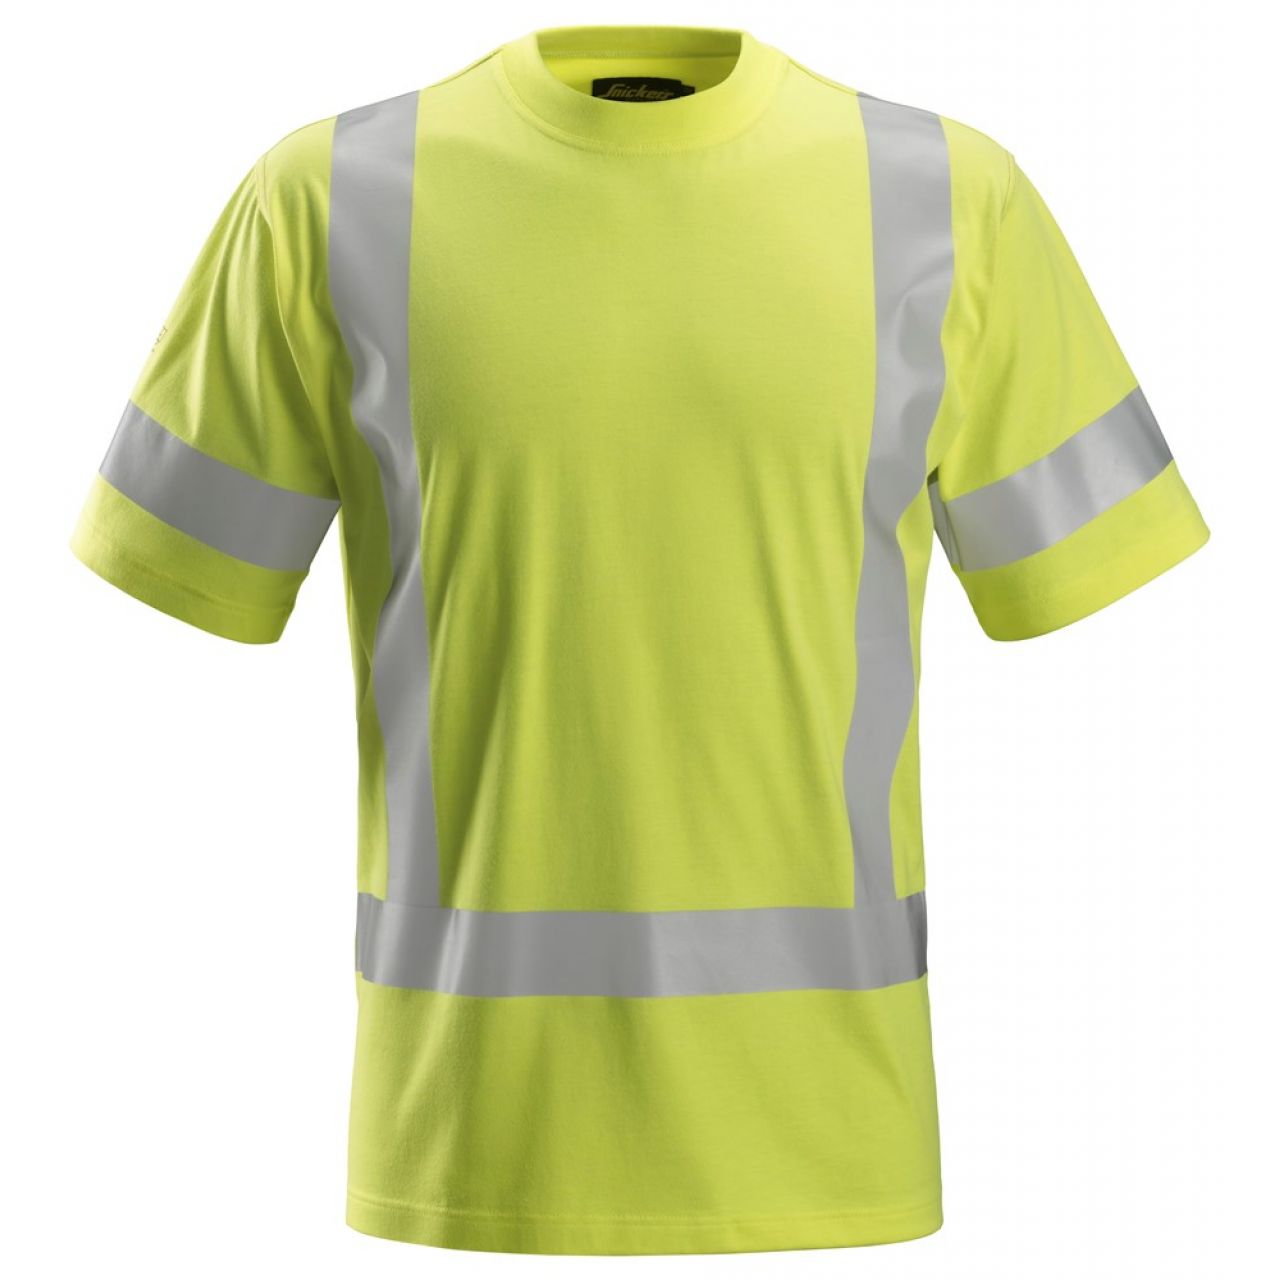 2562 Camiseta de manga corta de alta visibilidad clase 3 ProtecWork amarillo talla M